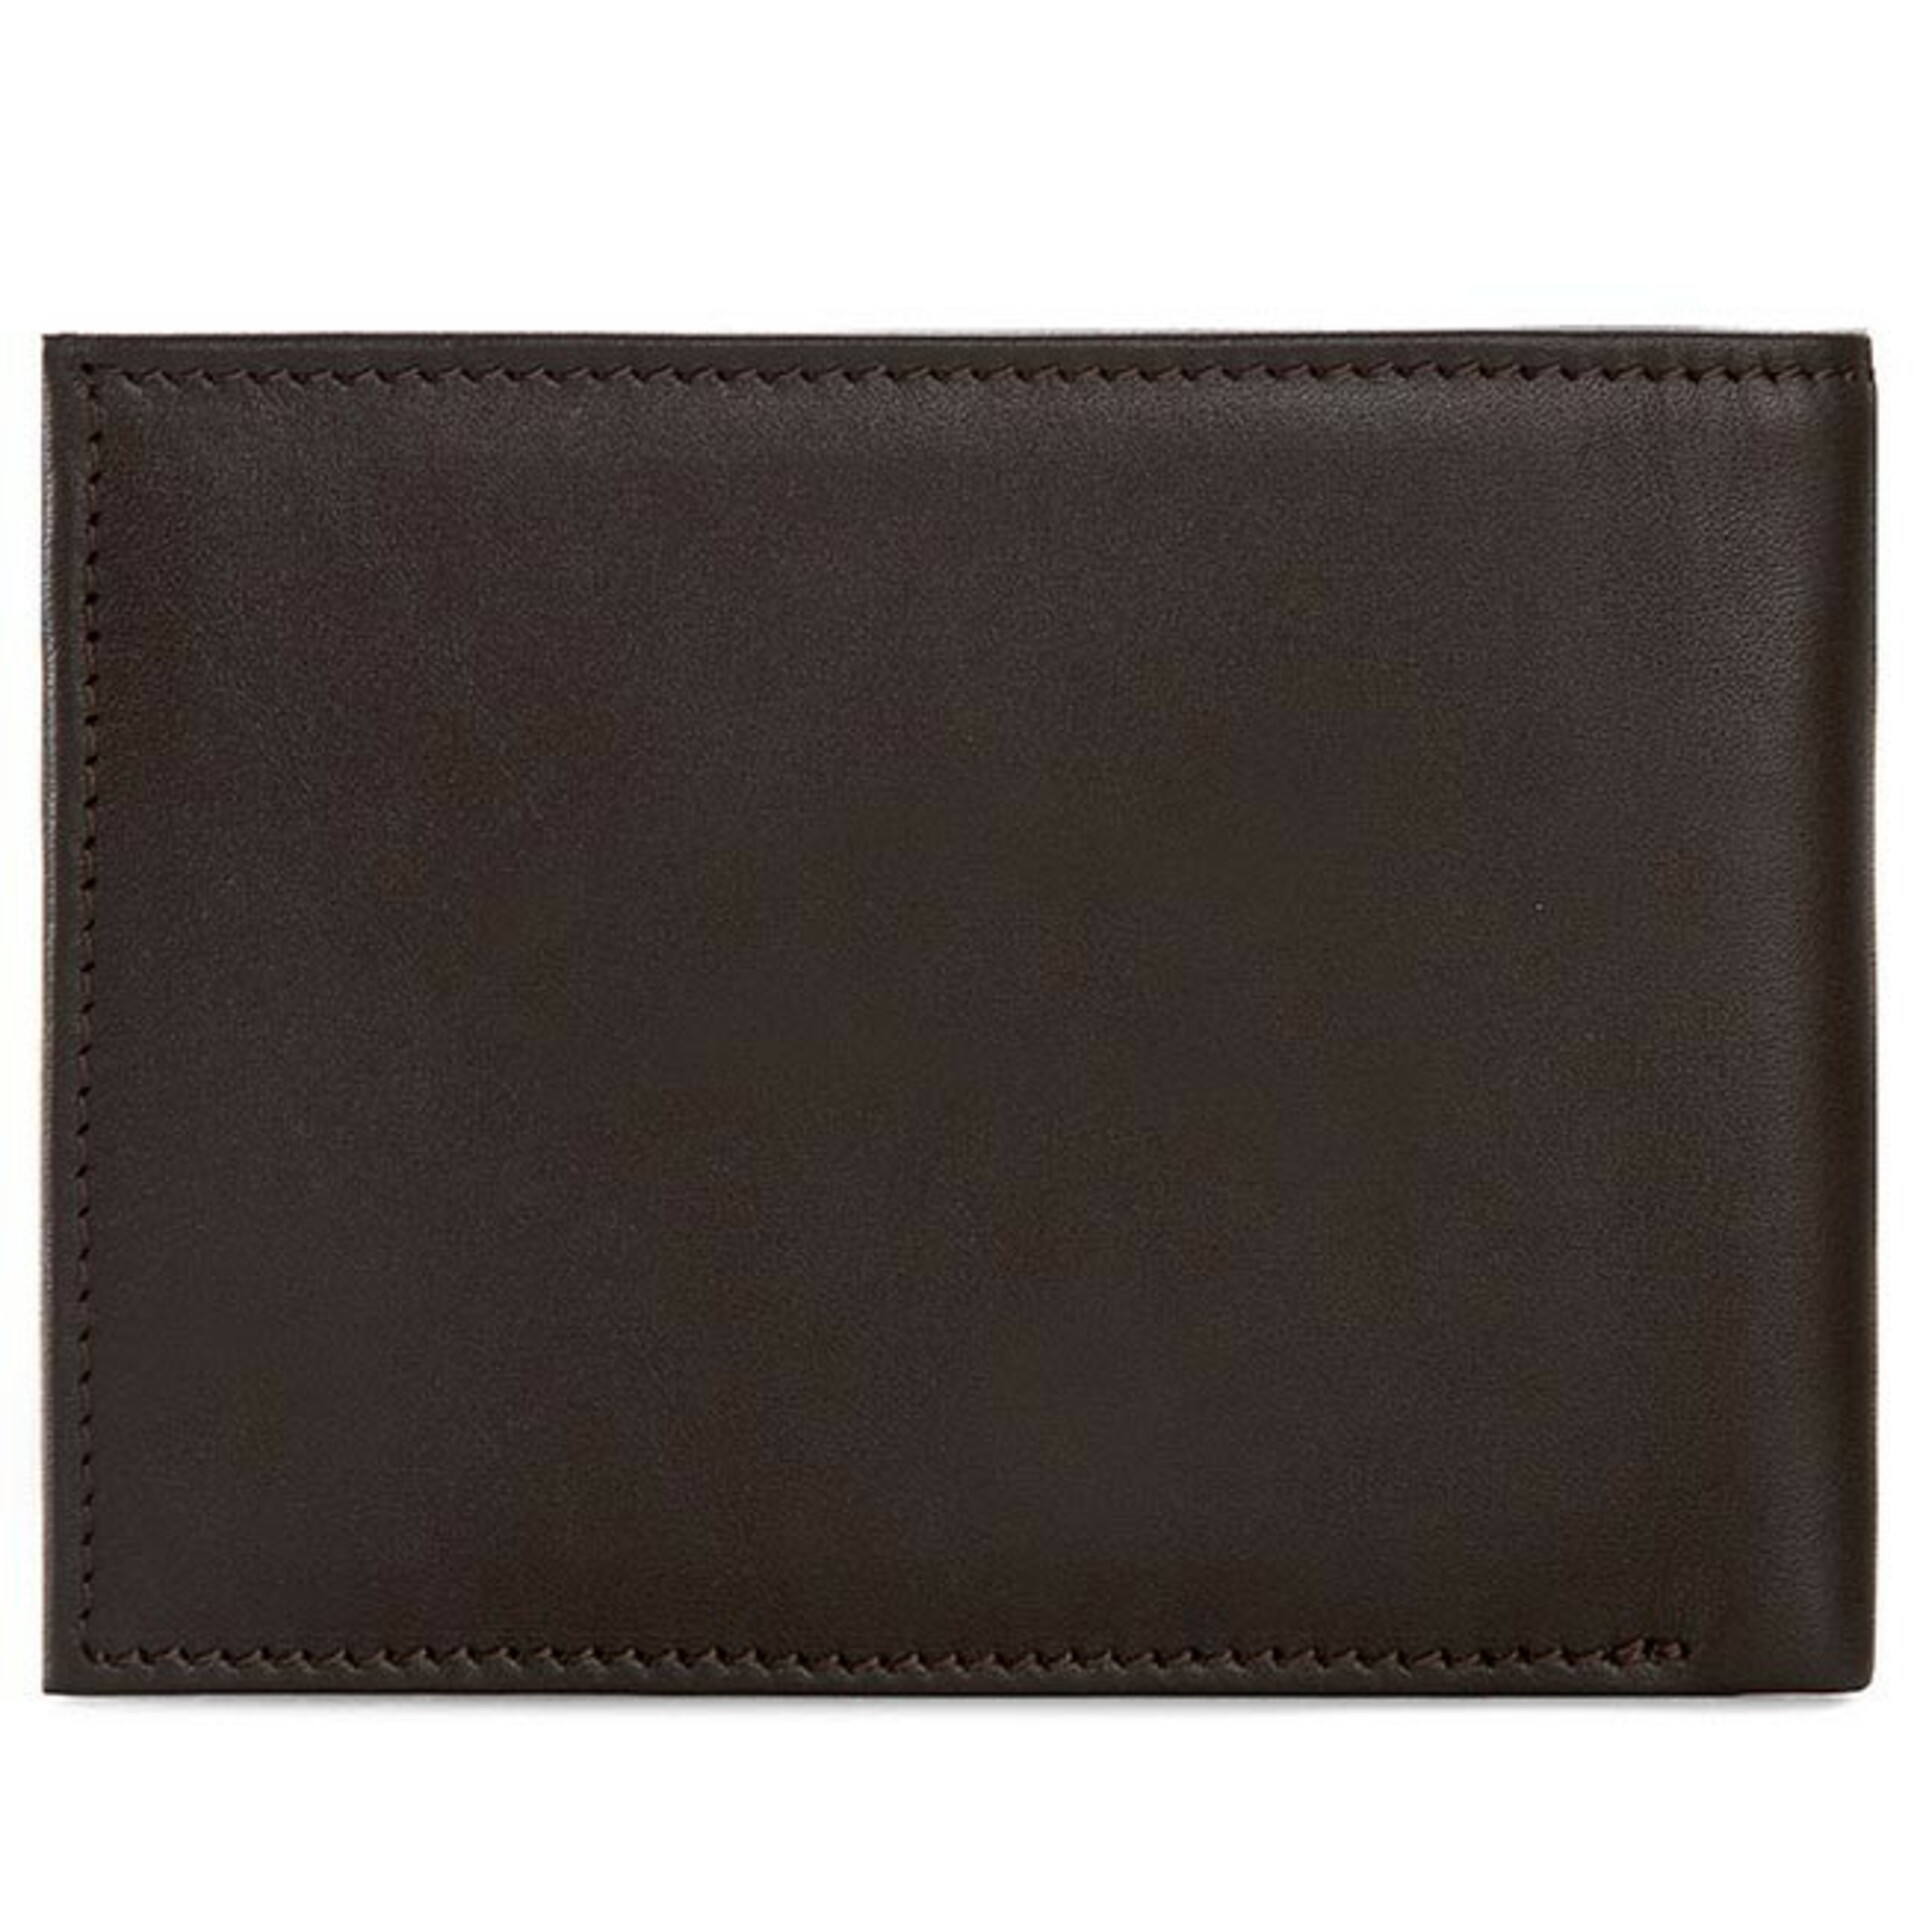 Tommy Hilfiger pánská hnědá peněženka - OS (041)